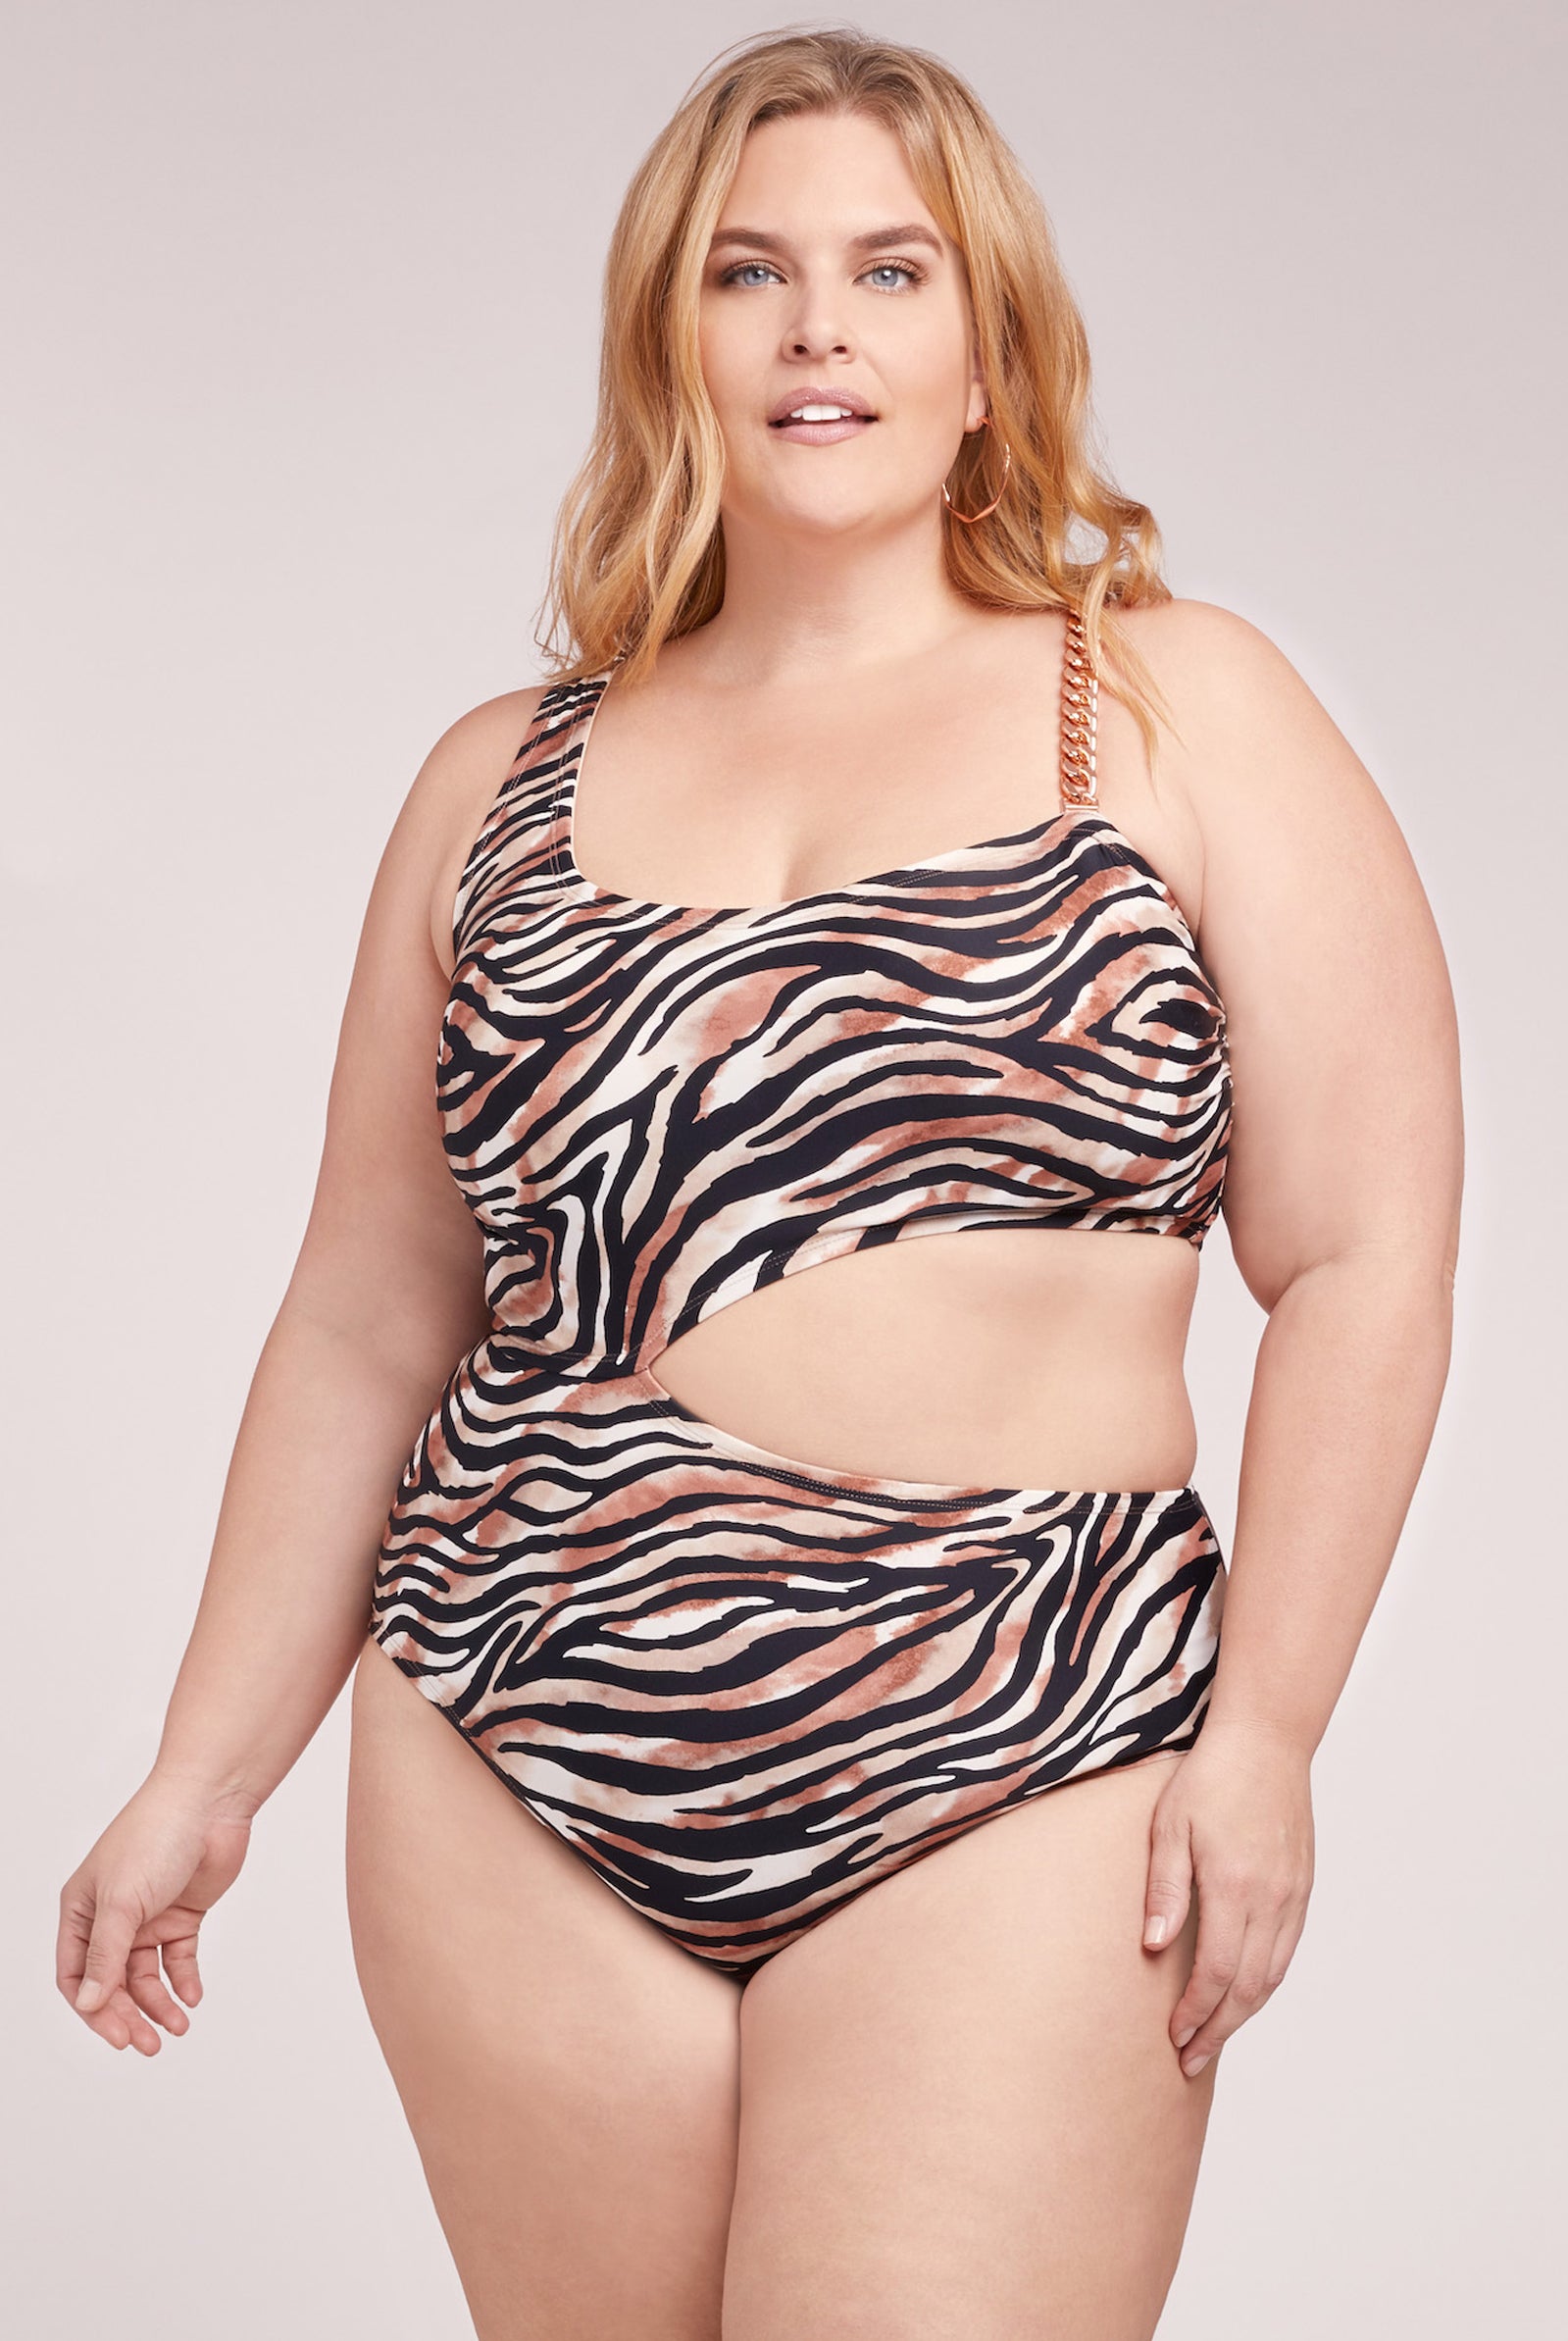 Lysa Swimwear Womens Plus Size 0X-3X Single Shoulder 1 Piece